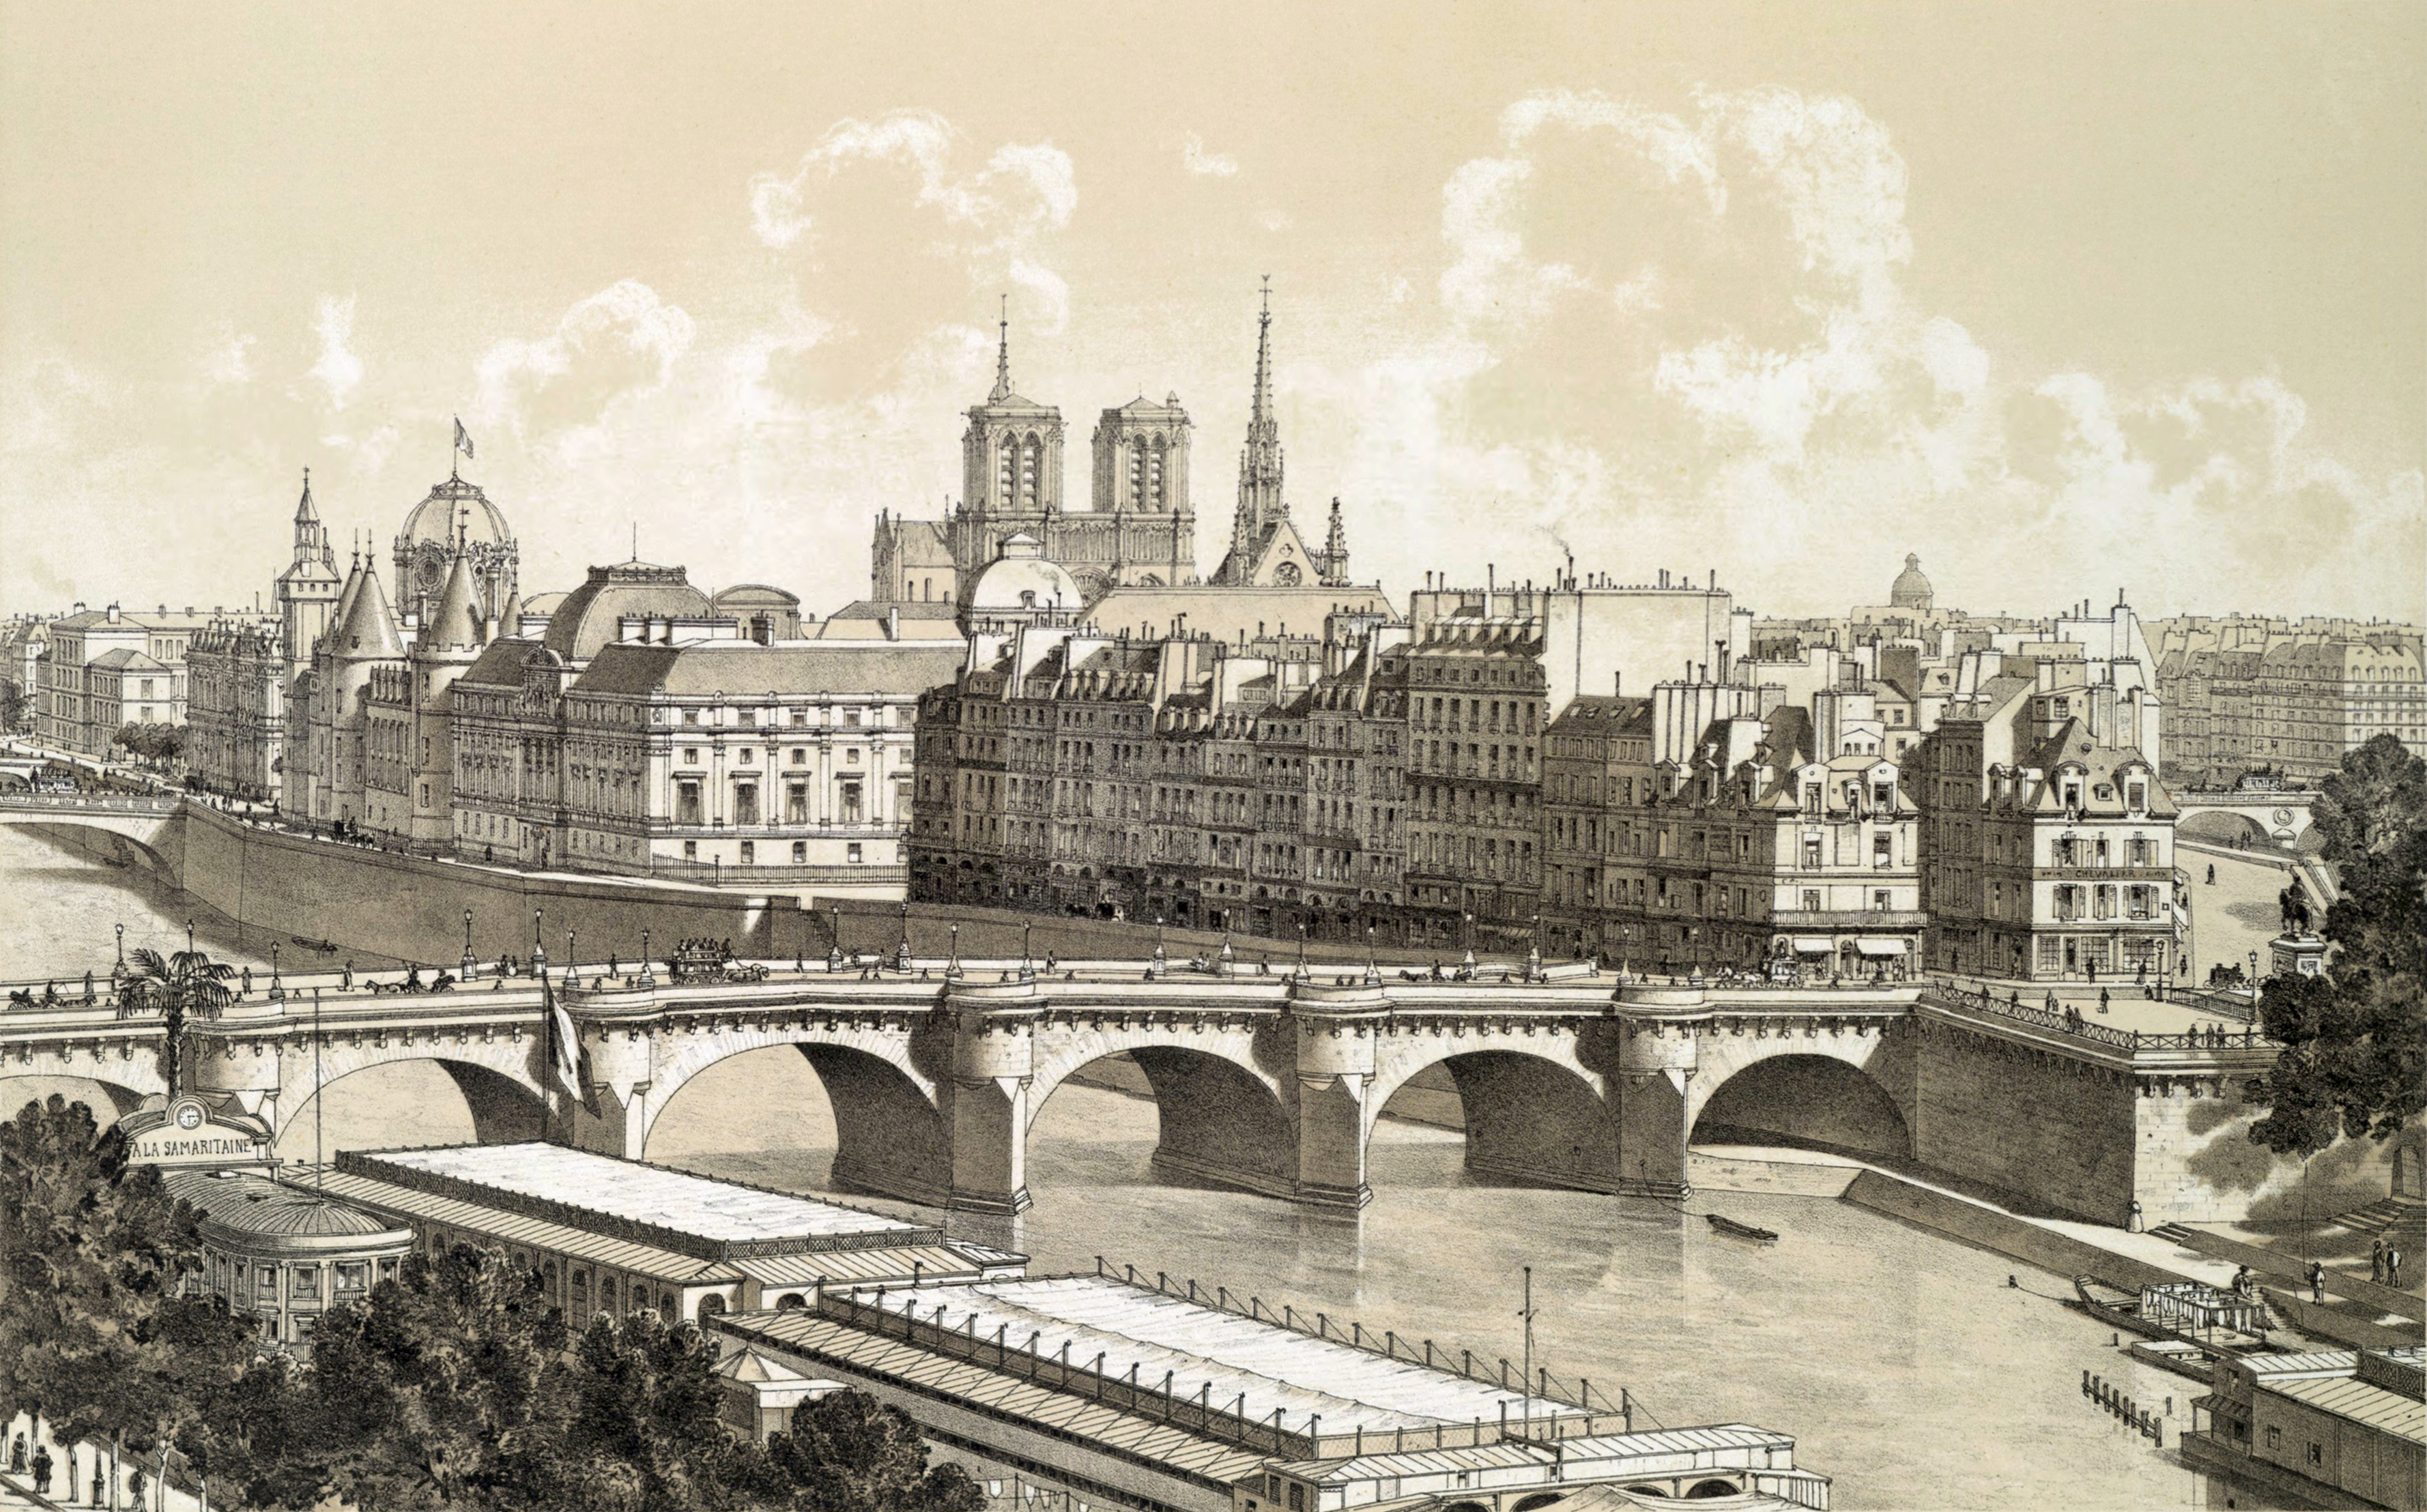 Pont Neuf, The Oldest Still Standing Bridge in Paris